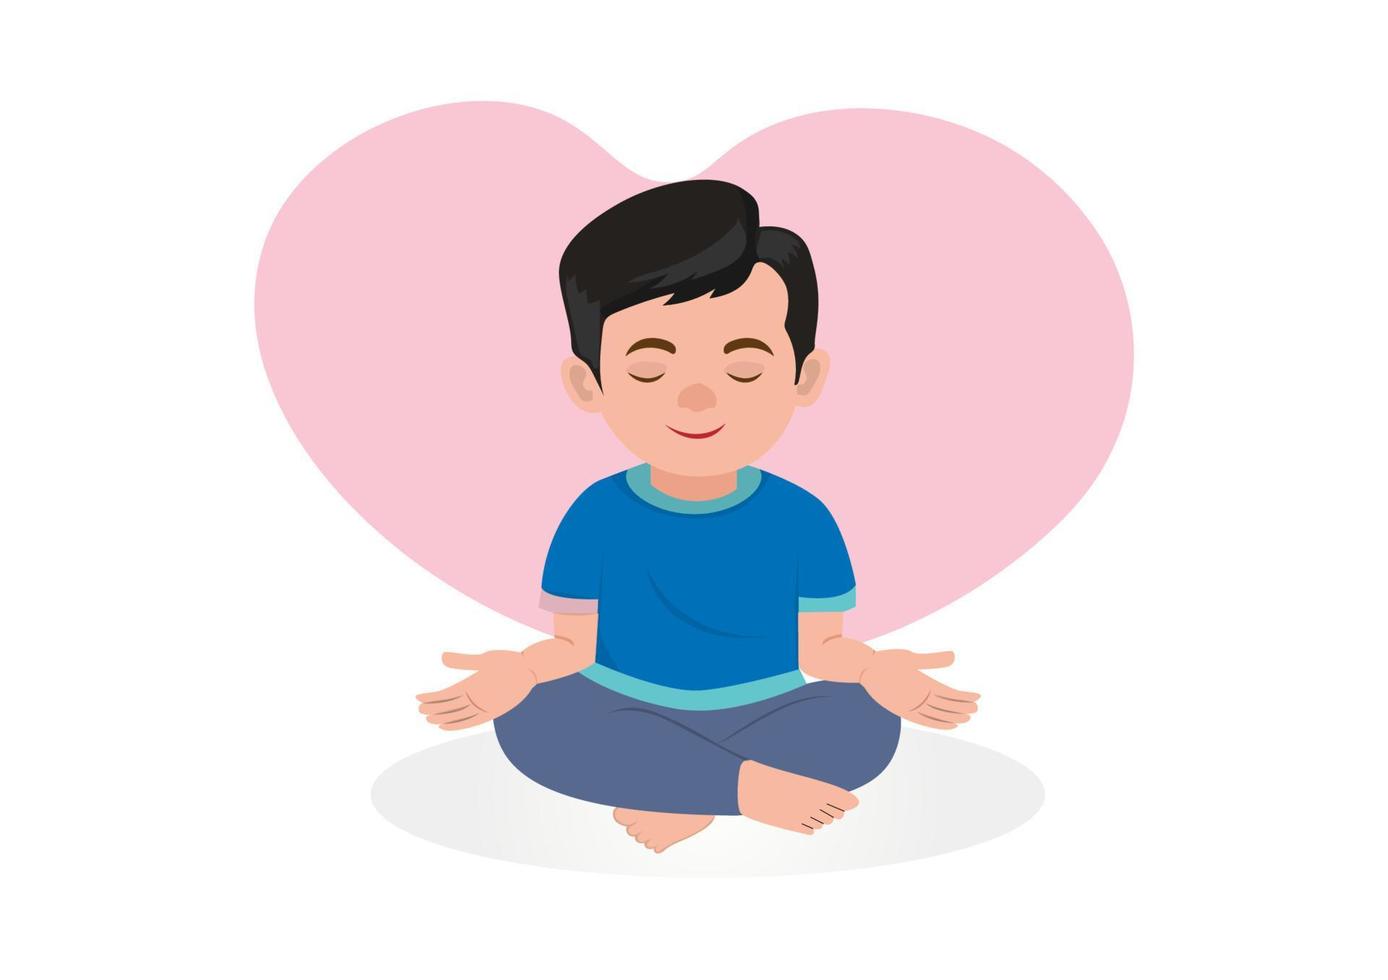 un giovane in una posizione di meditazione yoga. è felice, tranquillo, rilassato da tutte le preoccupazioni. vettore di illustrazione del fumetto in stile piatto